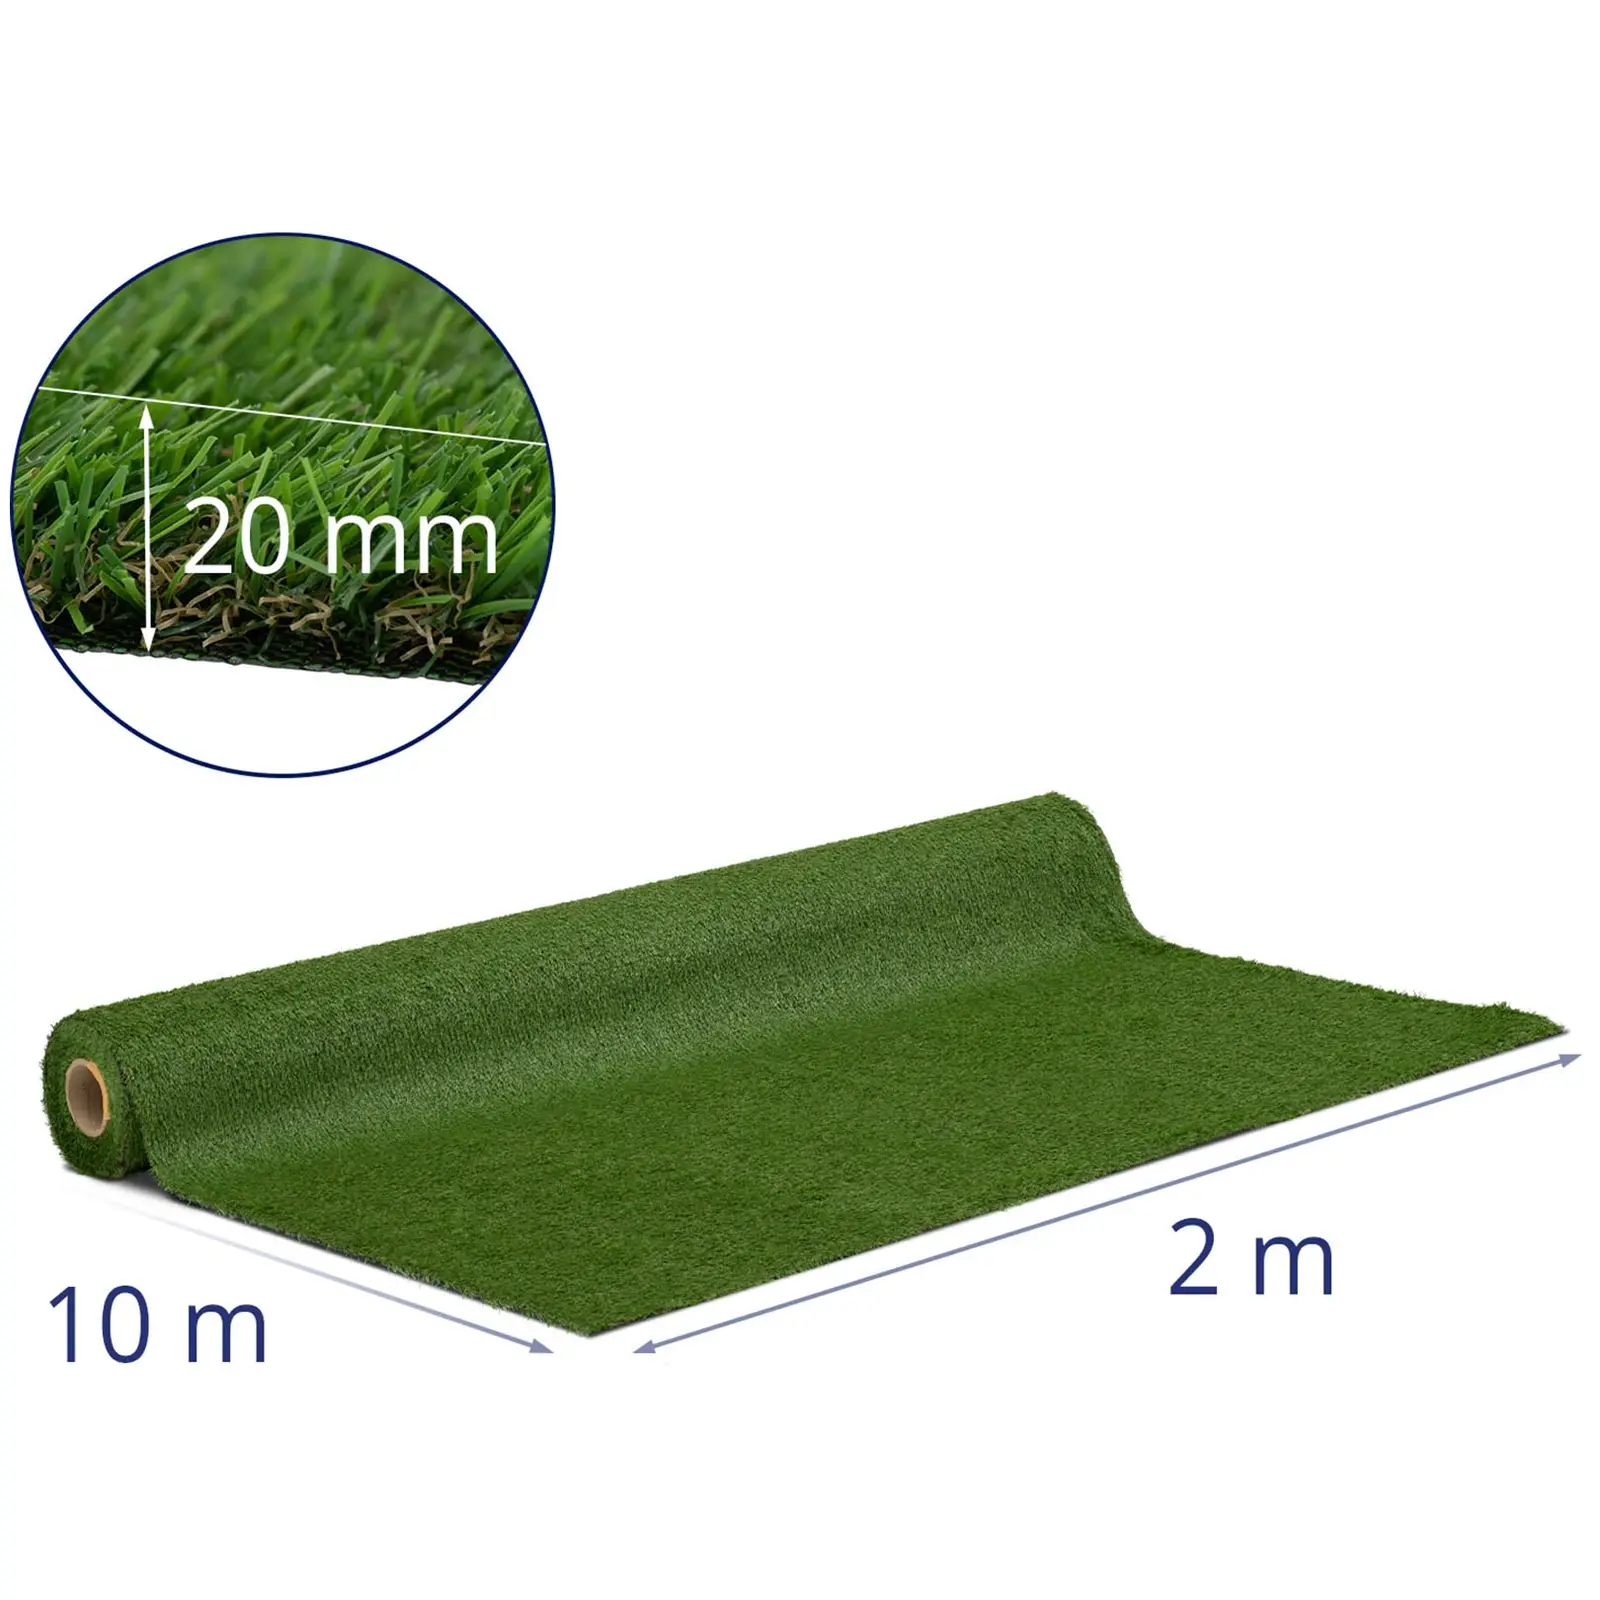 Umelý trávnik - 1023 x 200 cm - výška: 20 mm - hustota stehov: 13/10 cm - odolný proti UV žiareniu